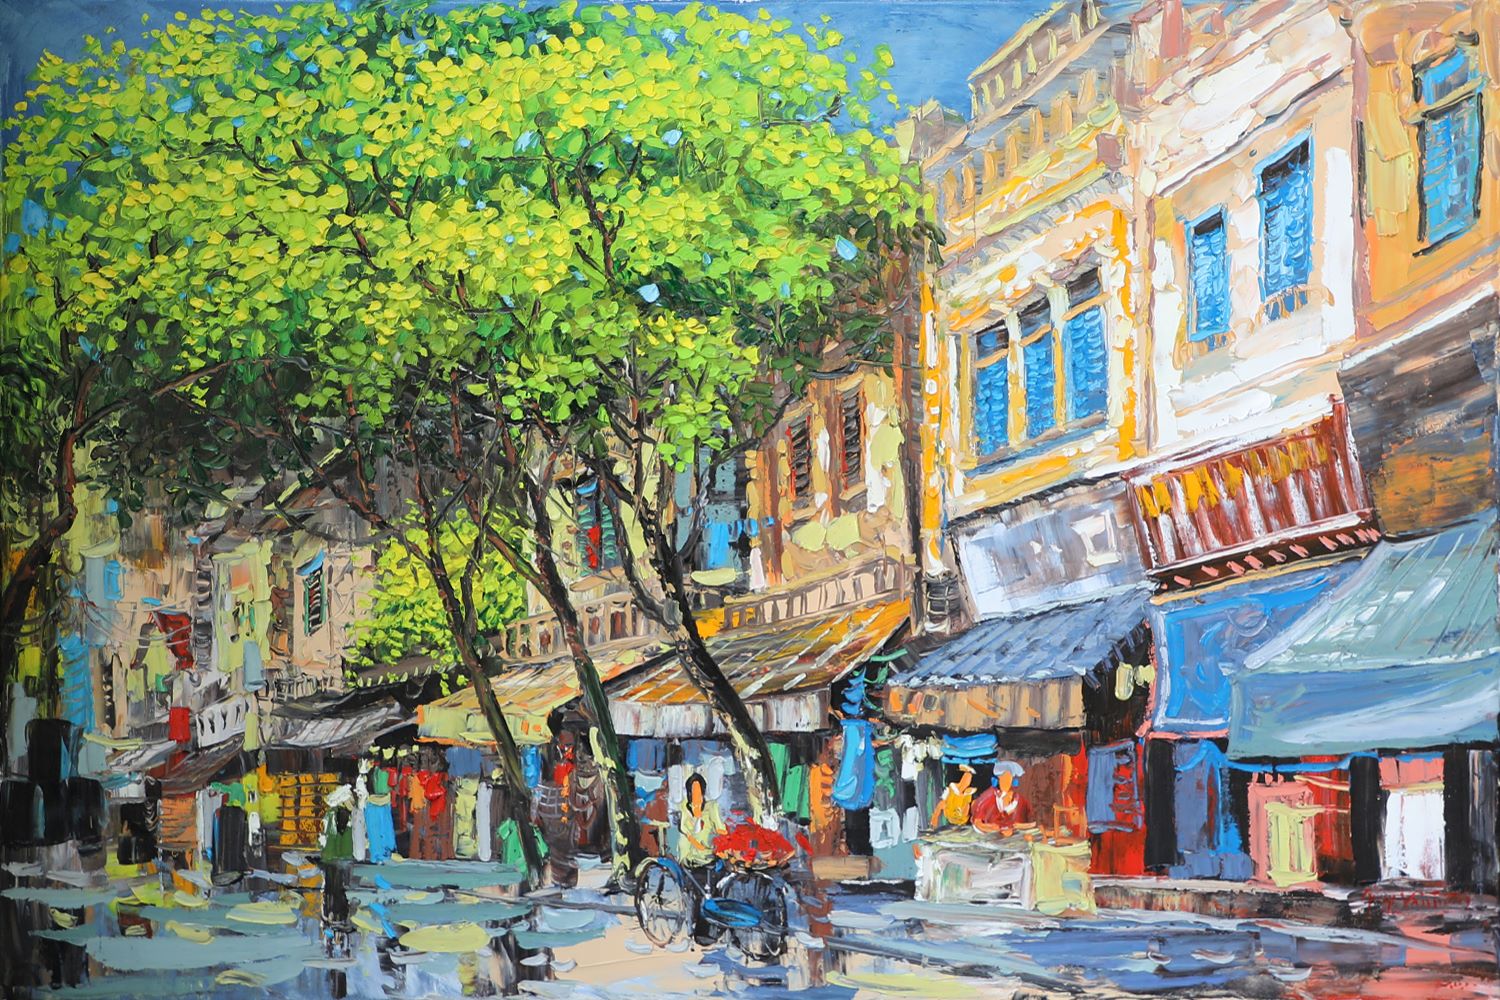 Street in Summer - Vietnamese Oil Painting by Artist Giap Van Tuan